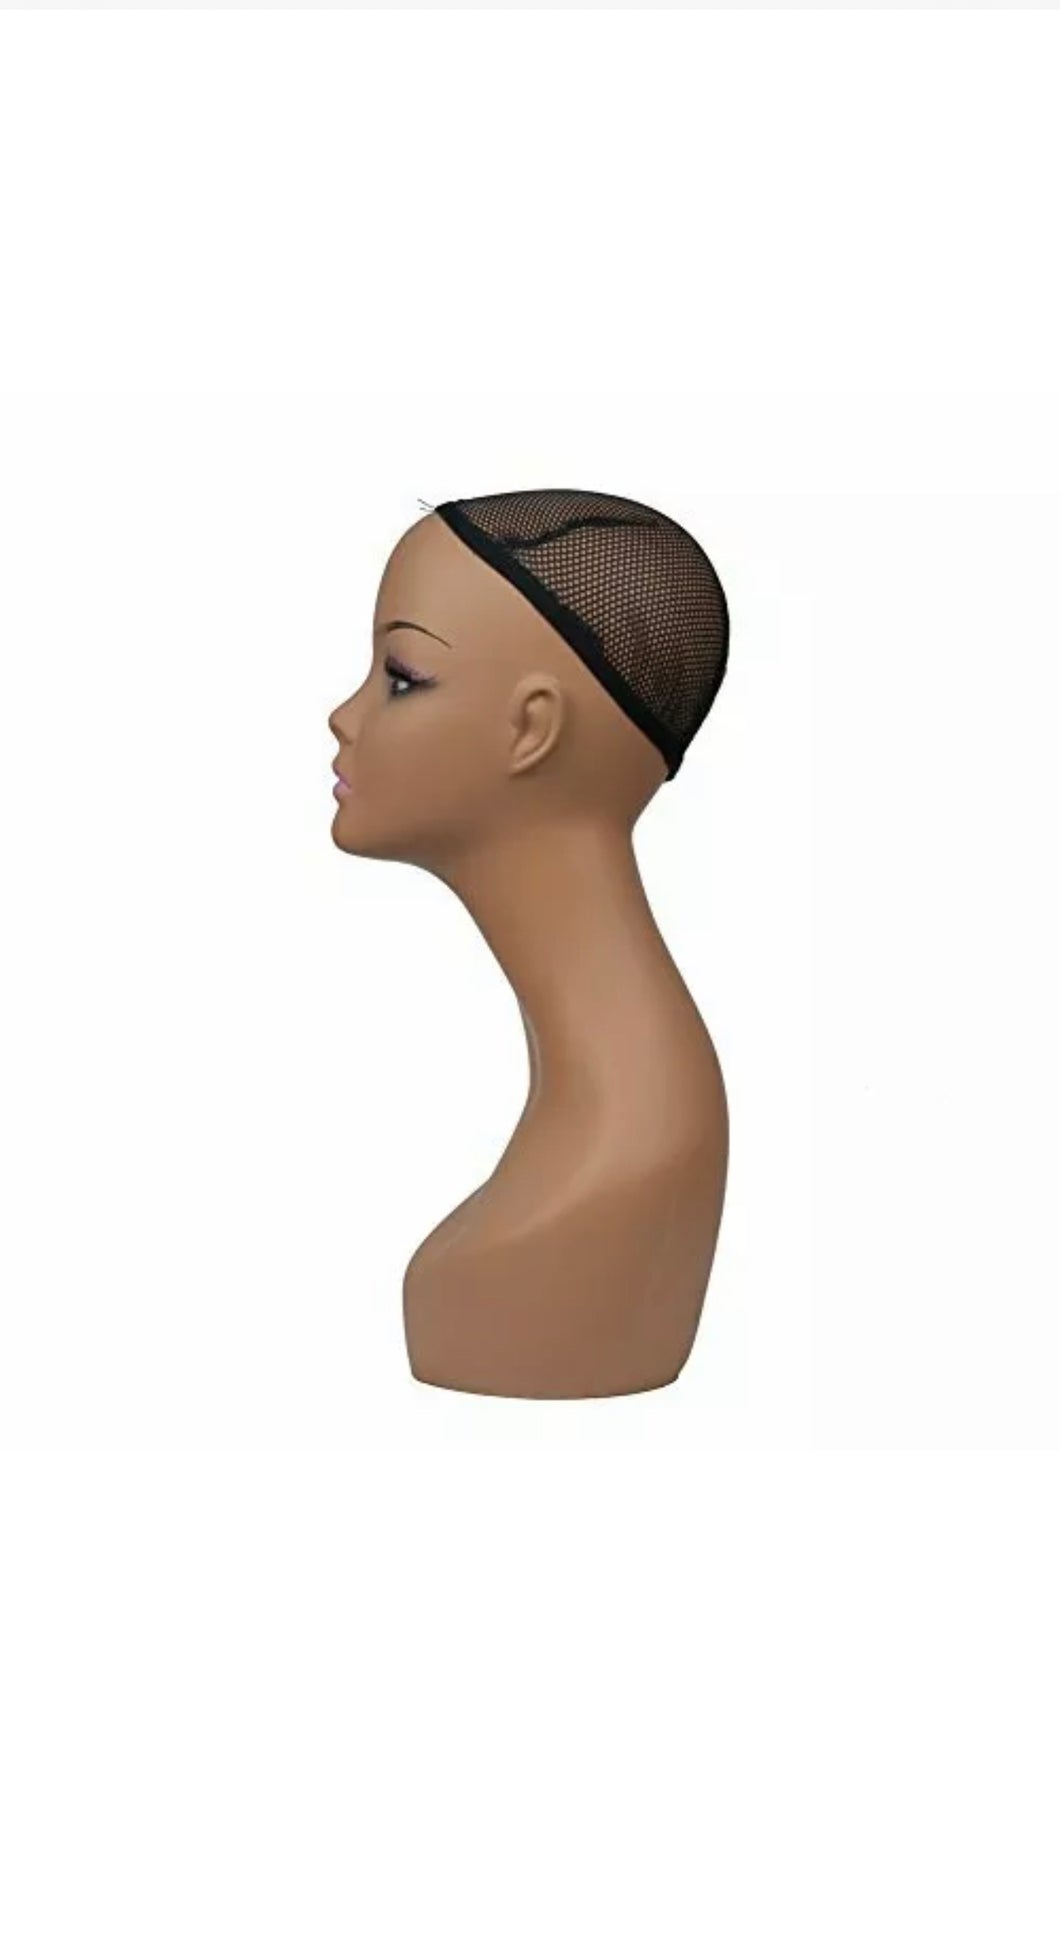 Female mannequin head